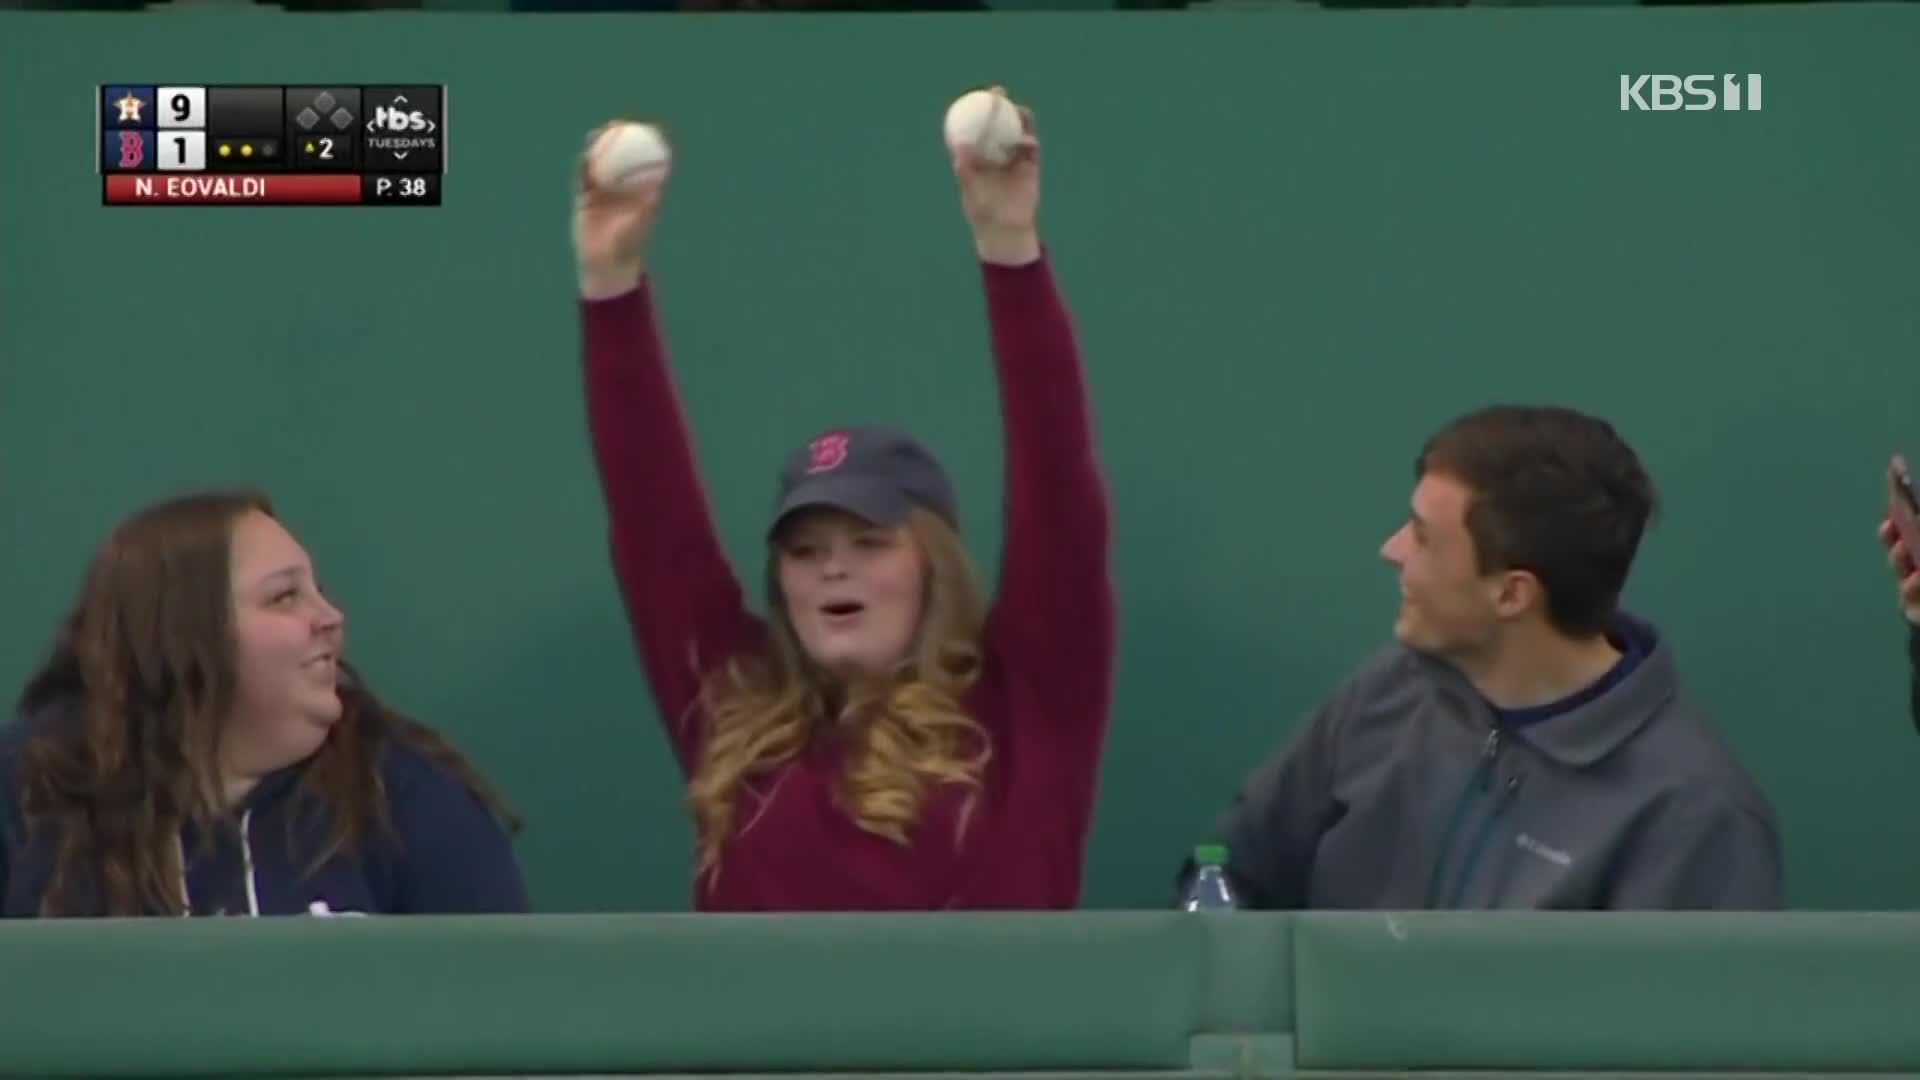 [오늘의 영상] 홈런볼 2개 잡은 관중…이런 행운이!